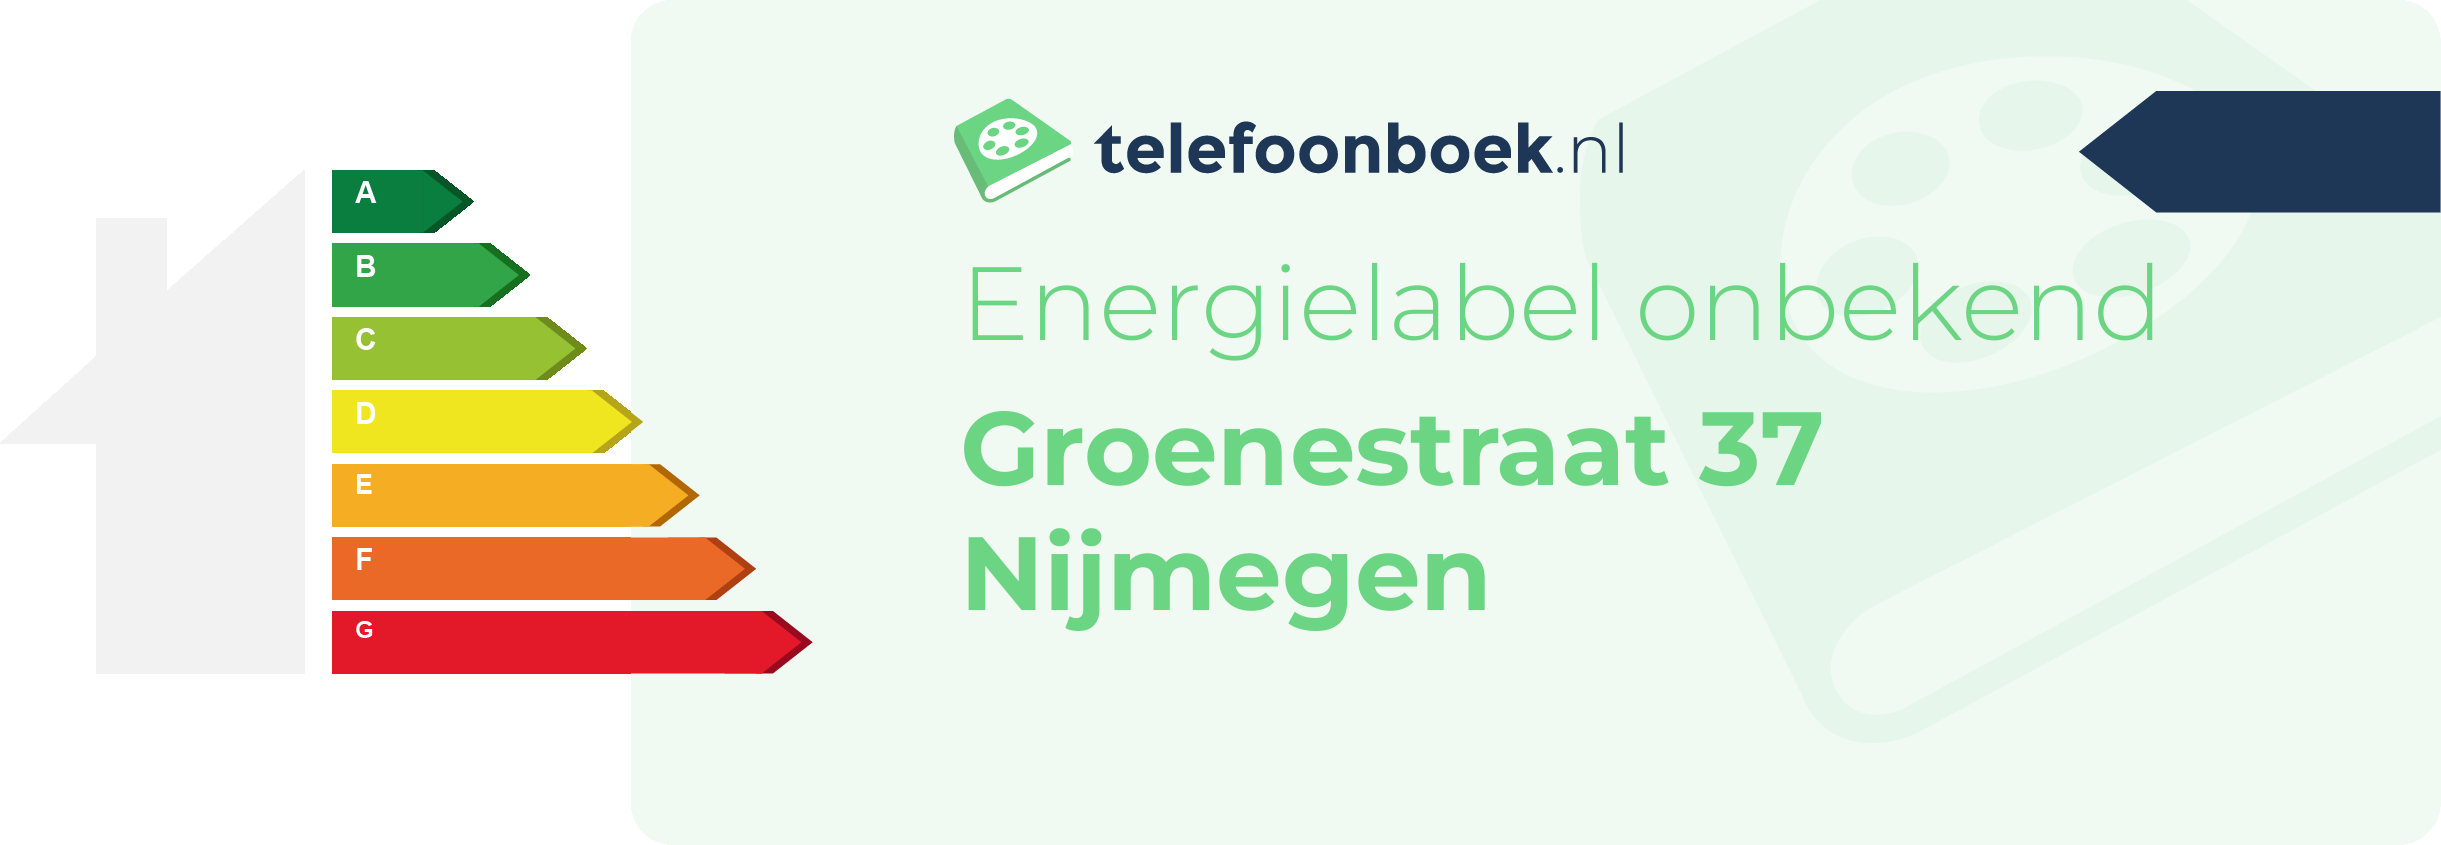 Energielabel Groenestraat 37 Nijmegen